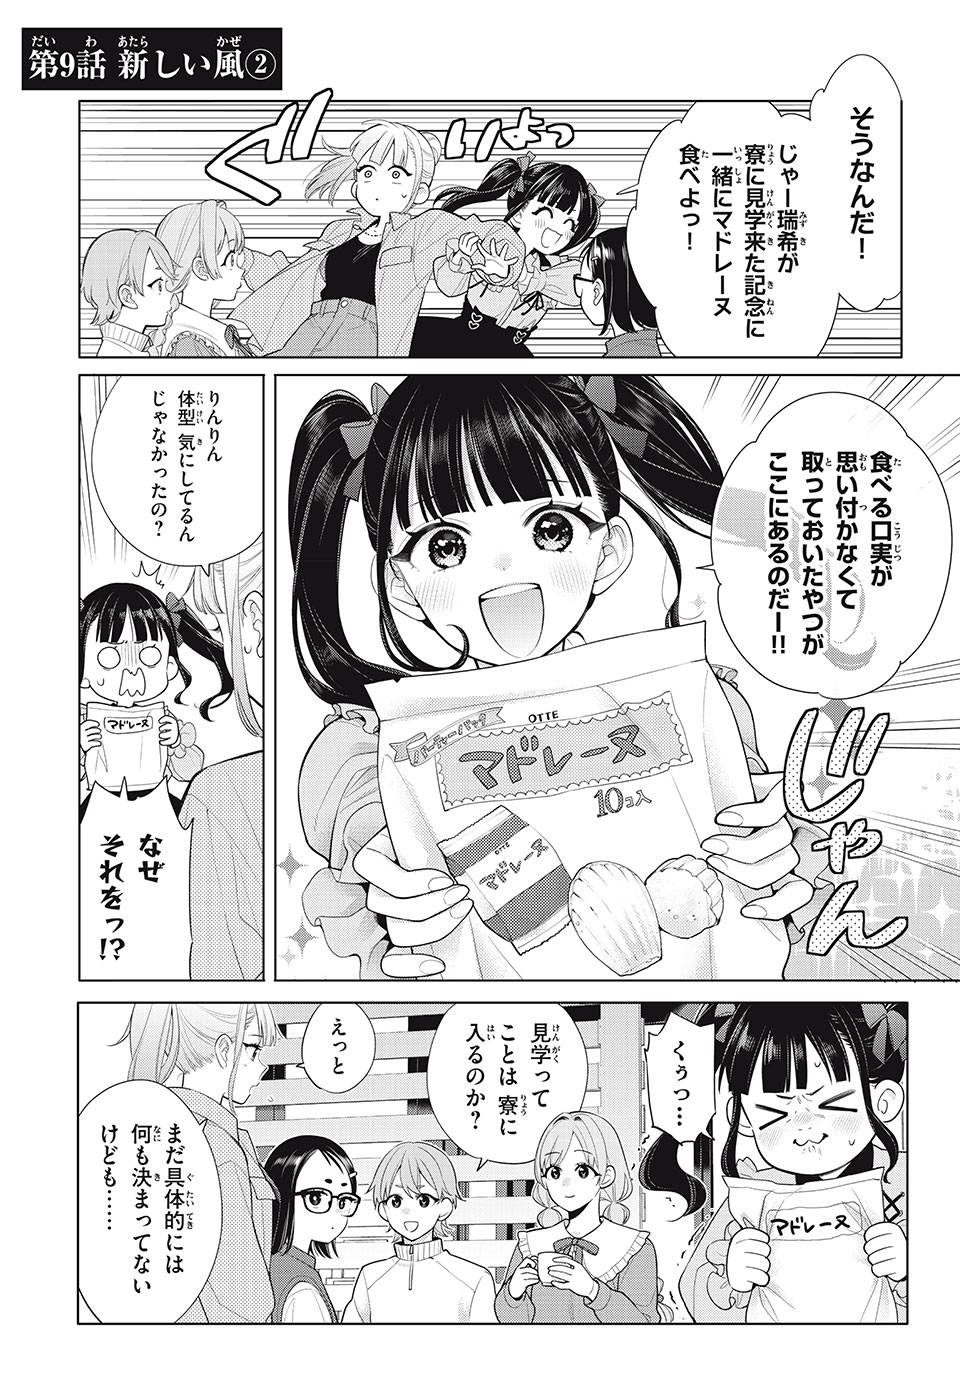 Watashi wo Center ni suru to Chigaimasu ka? - Chapter 9.2 - Page 2